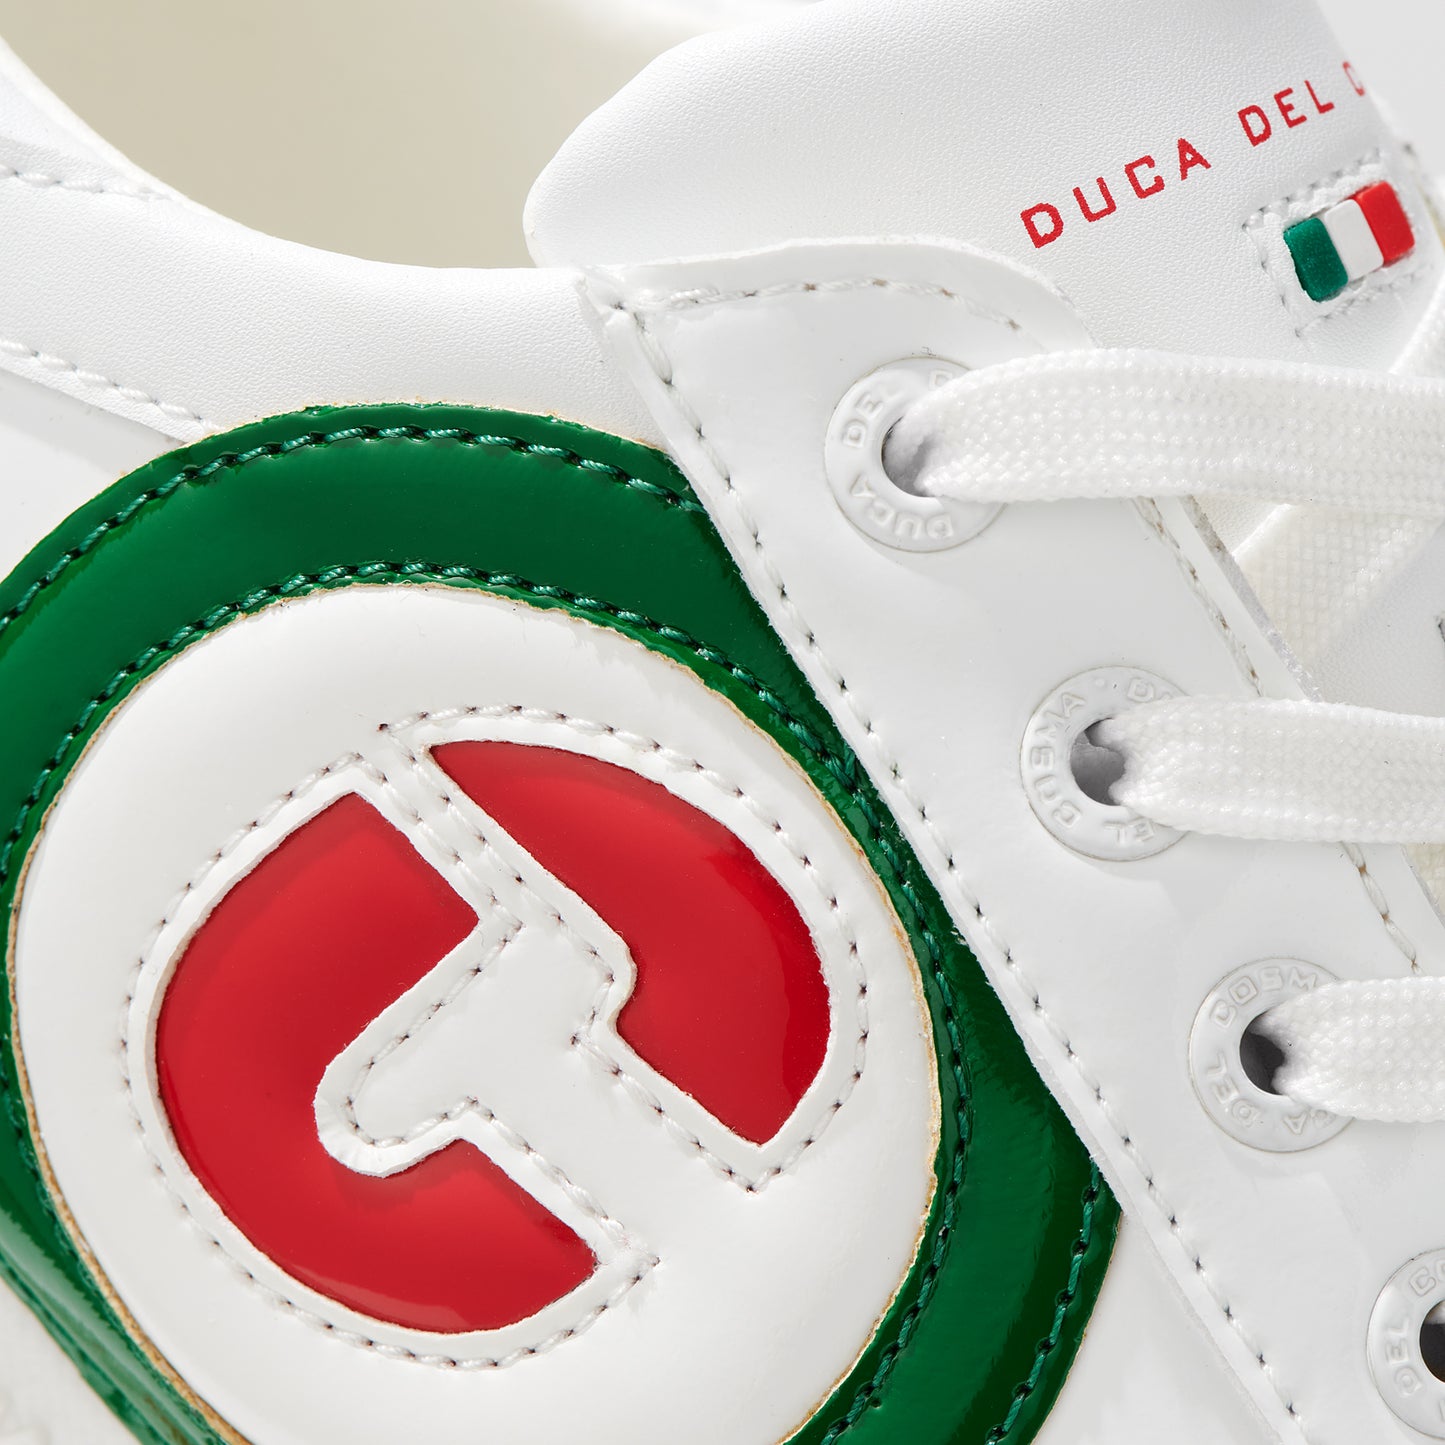 Kubananeo White Red Green - Women's Golf Shoe 